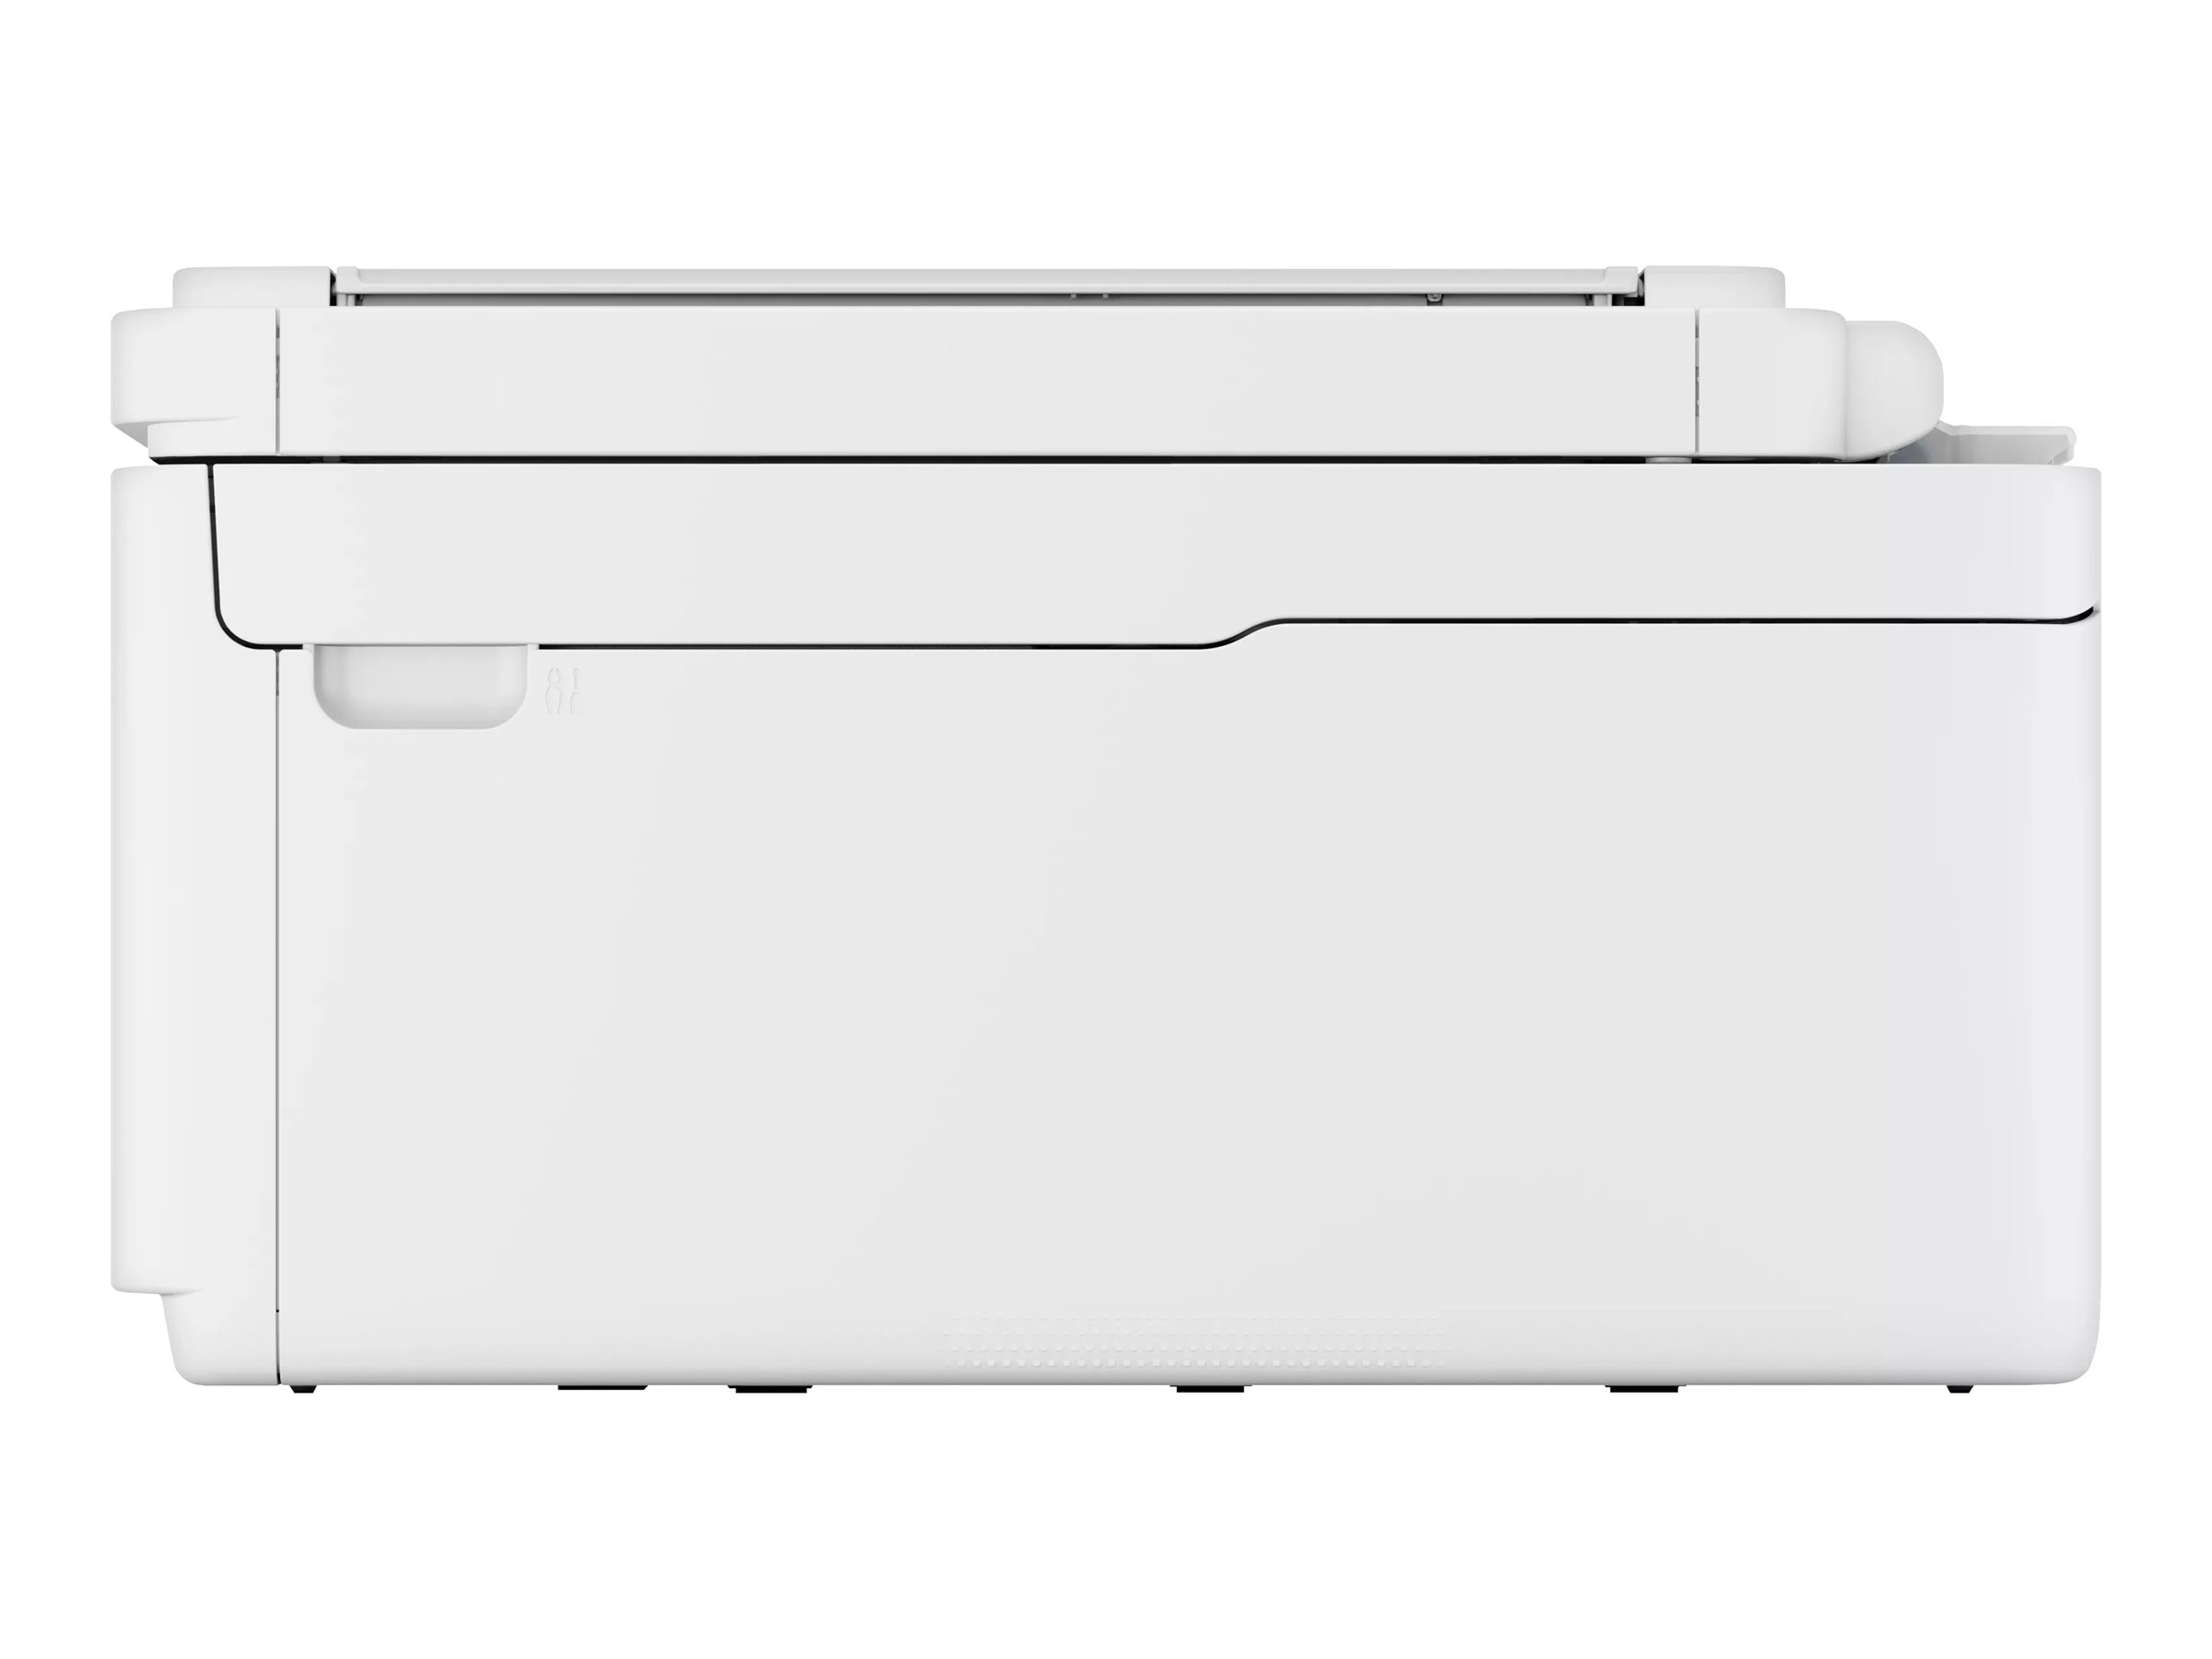 Canon PIXMA TS7750i - Imprimante multifonctions - couleur - jet d'encre - Legal (216 x 356 mm) (original) - A4/Legal (support) - jusqu'à 15 ipm (impression) - 200 feuilles - USB 2.0, Wi-Fi(n) - 6258C006 - Imprimantes multifonctions